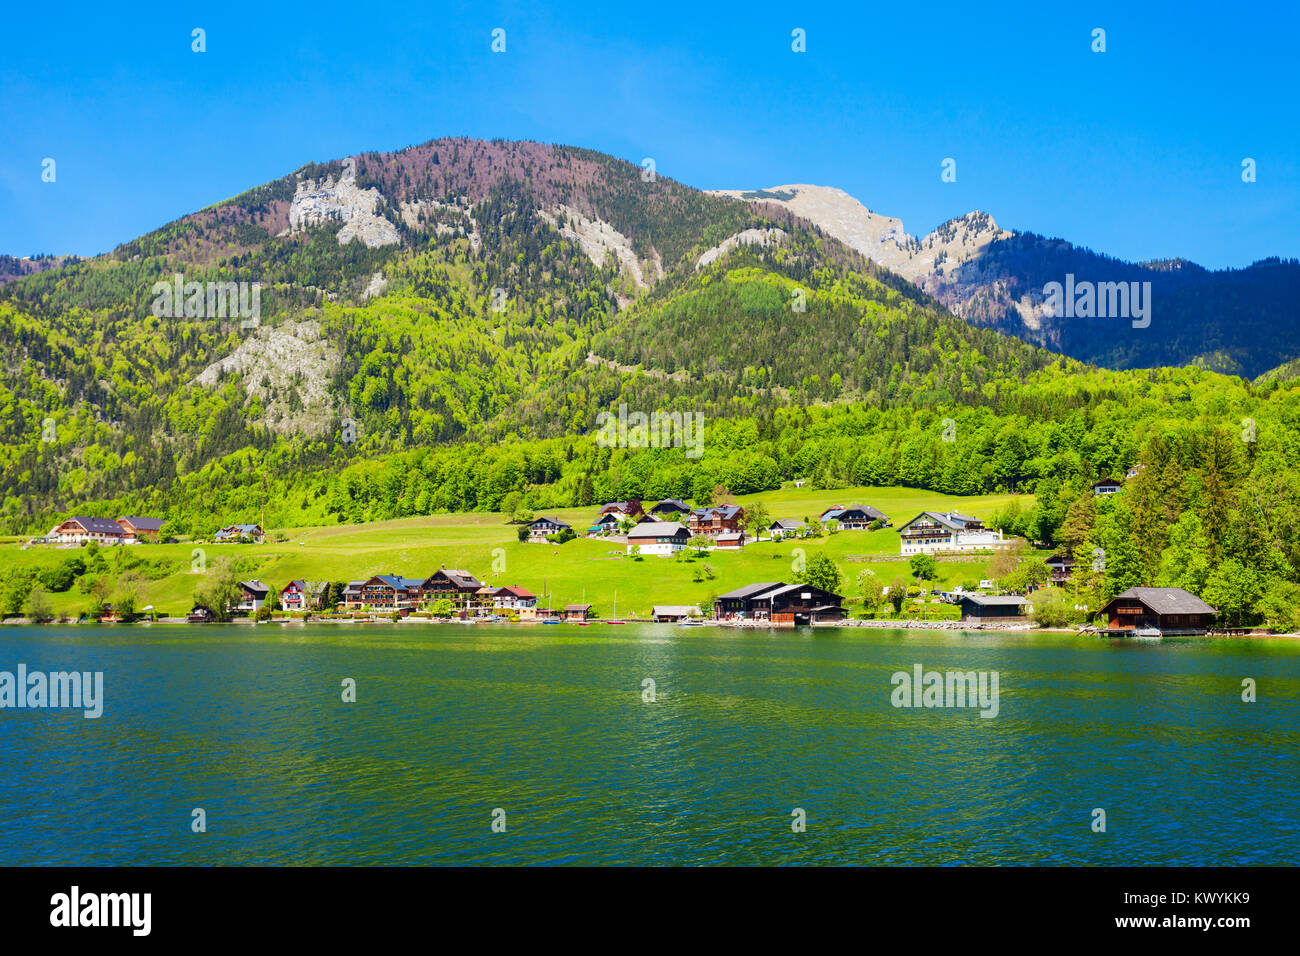 Le lac Wolfgangsee en Autriche. Wolfgangsee est un des lacs les plus connus dans la région du Salzkammergut resort région d'Autriche. Banque D'Images